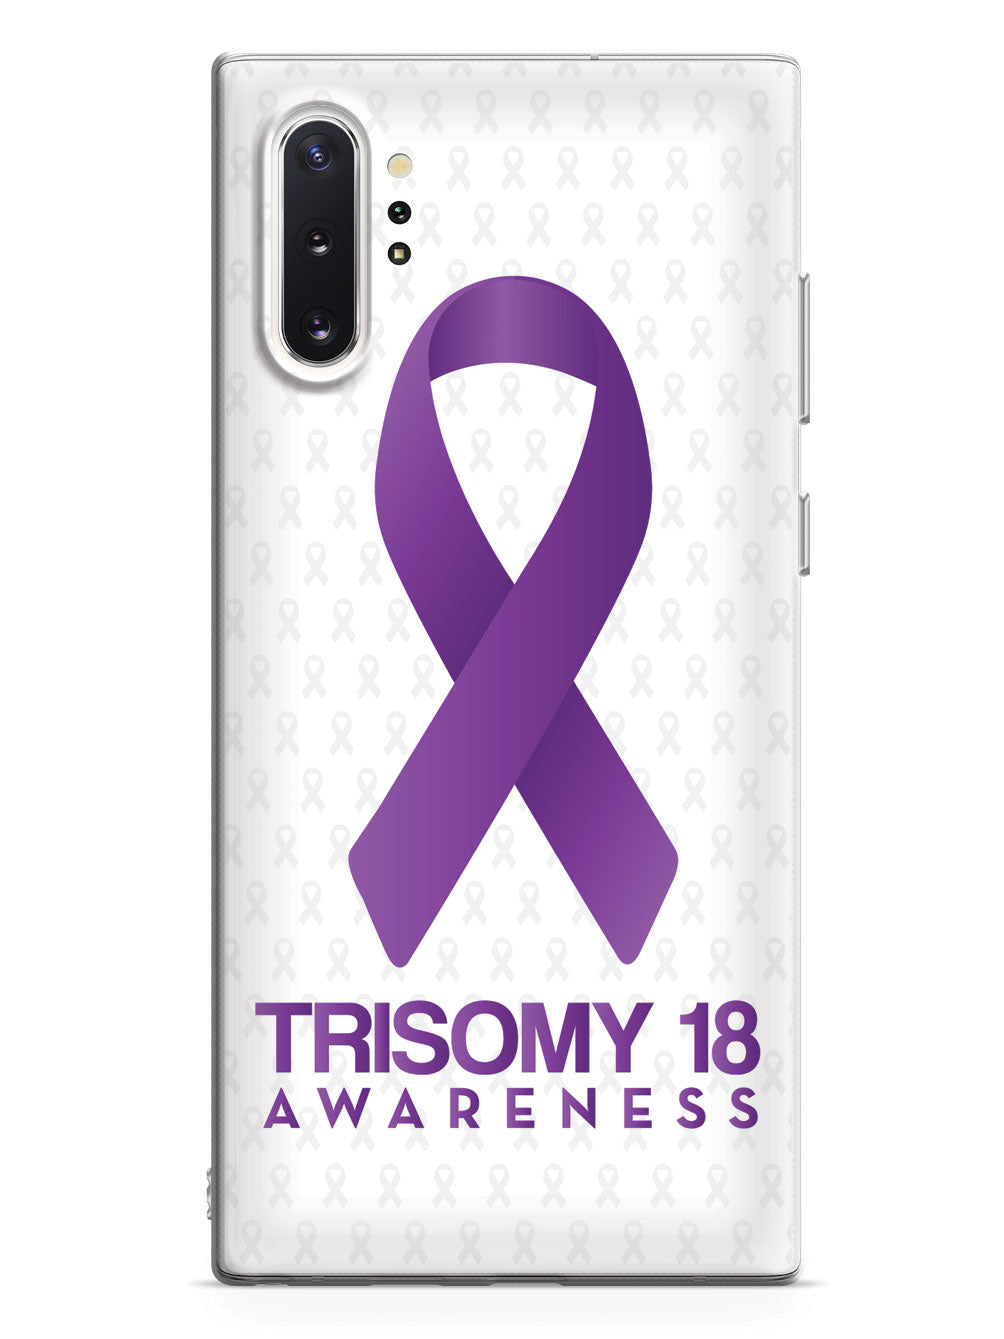 Trisomy 18 - Awareness Ribbon - White Case